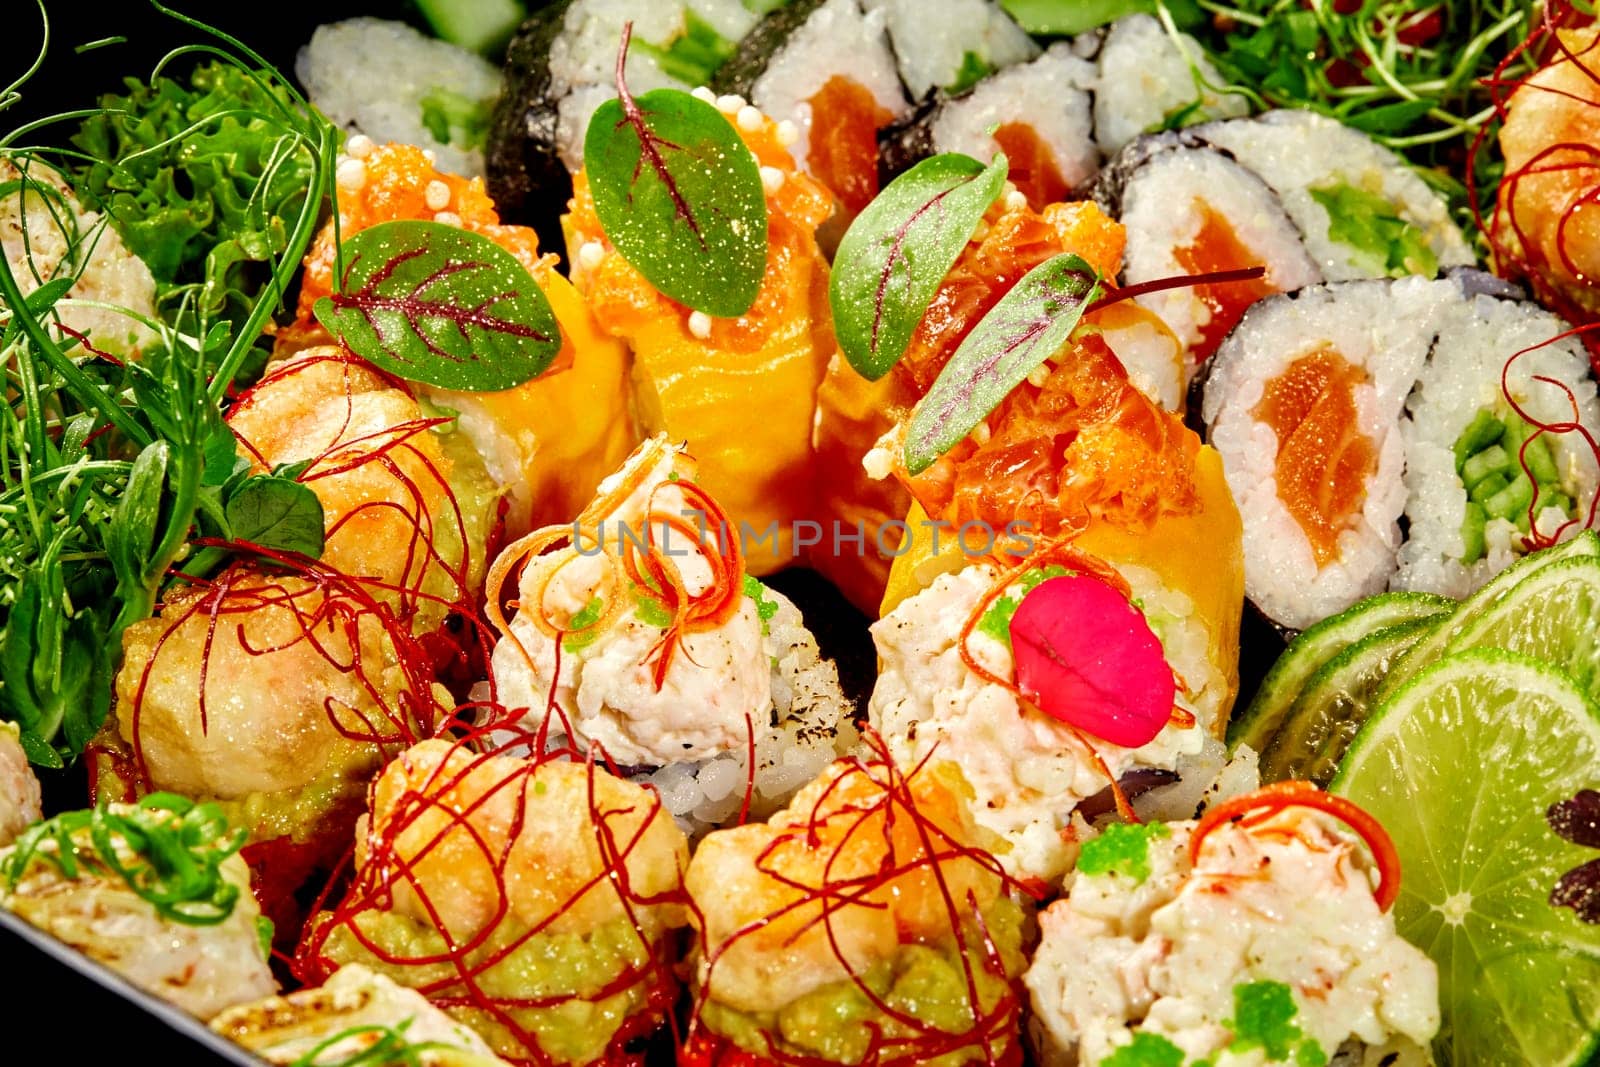 Macro shot of luxurious sushi rolls with artful garnishes by nazarovsergey